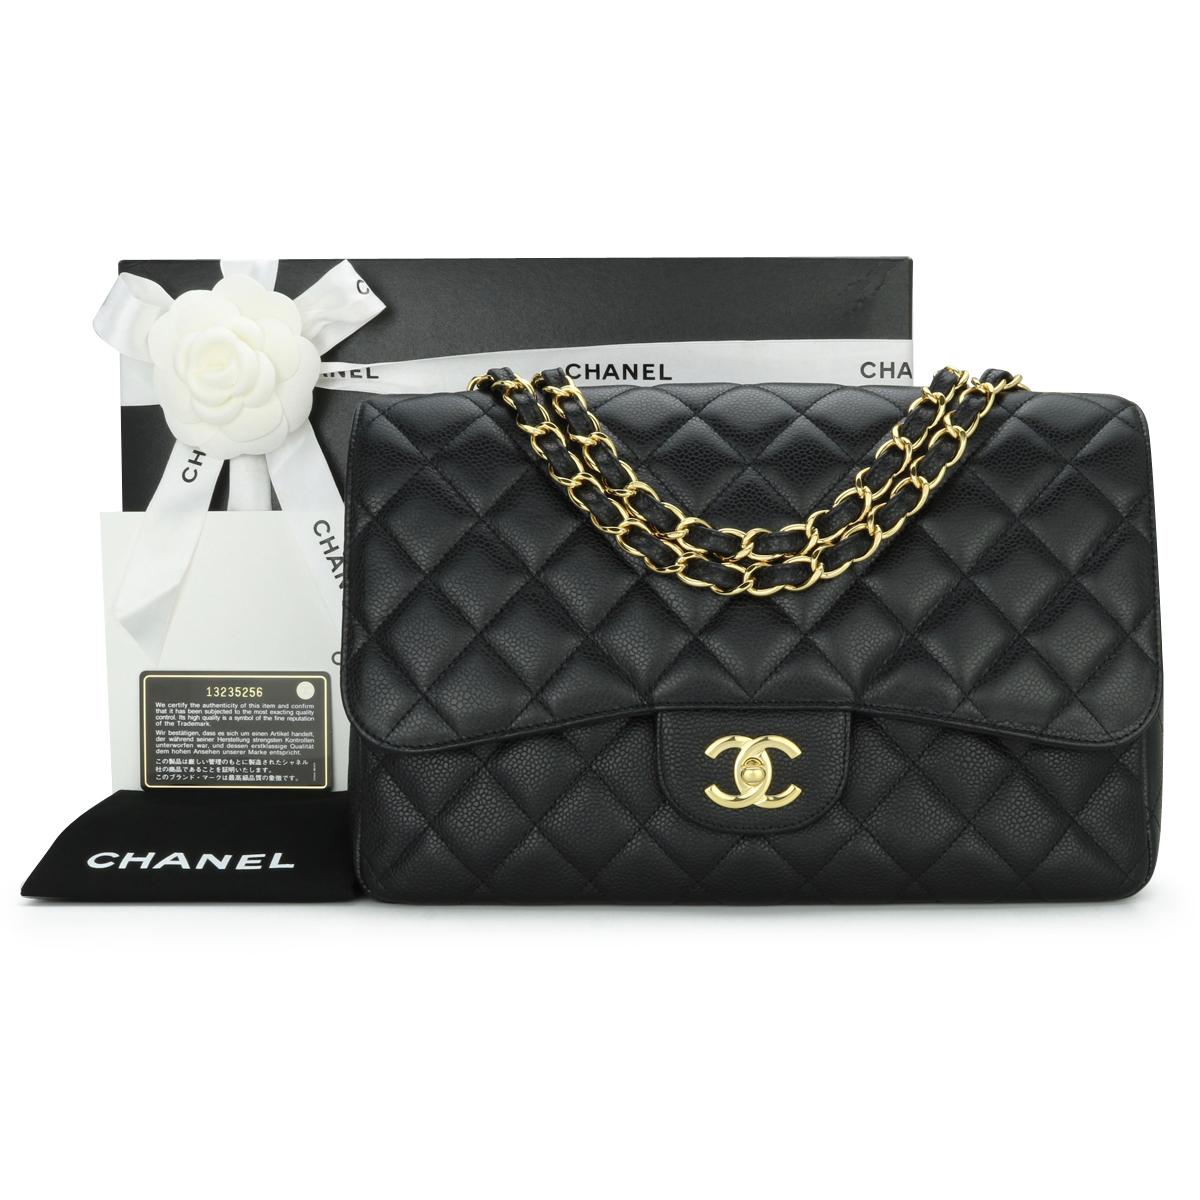 Chanel Classic Single Flap Jumbo Bag Black Caviar with Gold Hardware 2010.

Ce superbe sac est en excellent état, il a conservé sa forme originale et les accessoires sont encore très brillants. Il s'agit d'un sac très léger par rapport aux sacs à